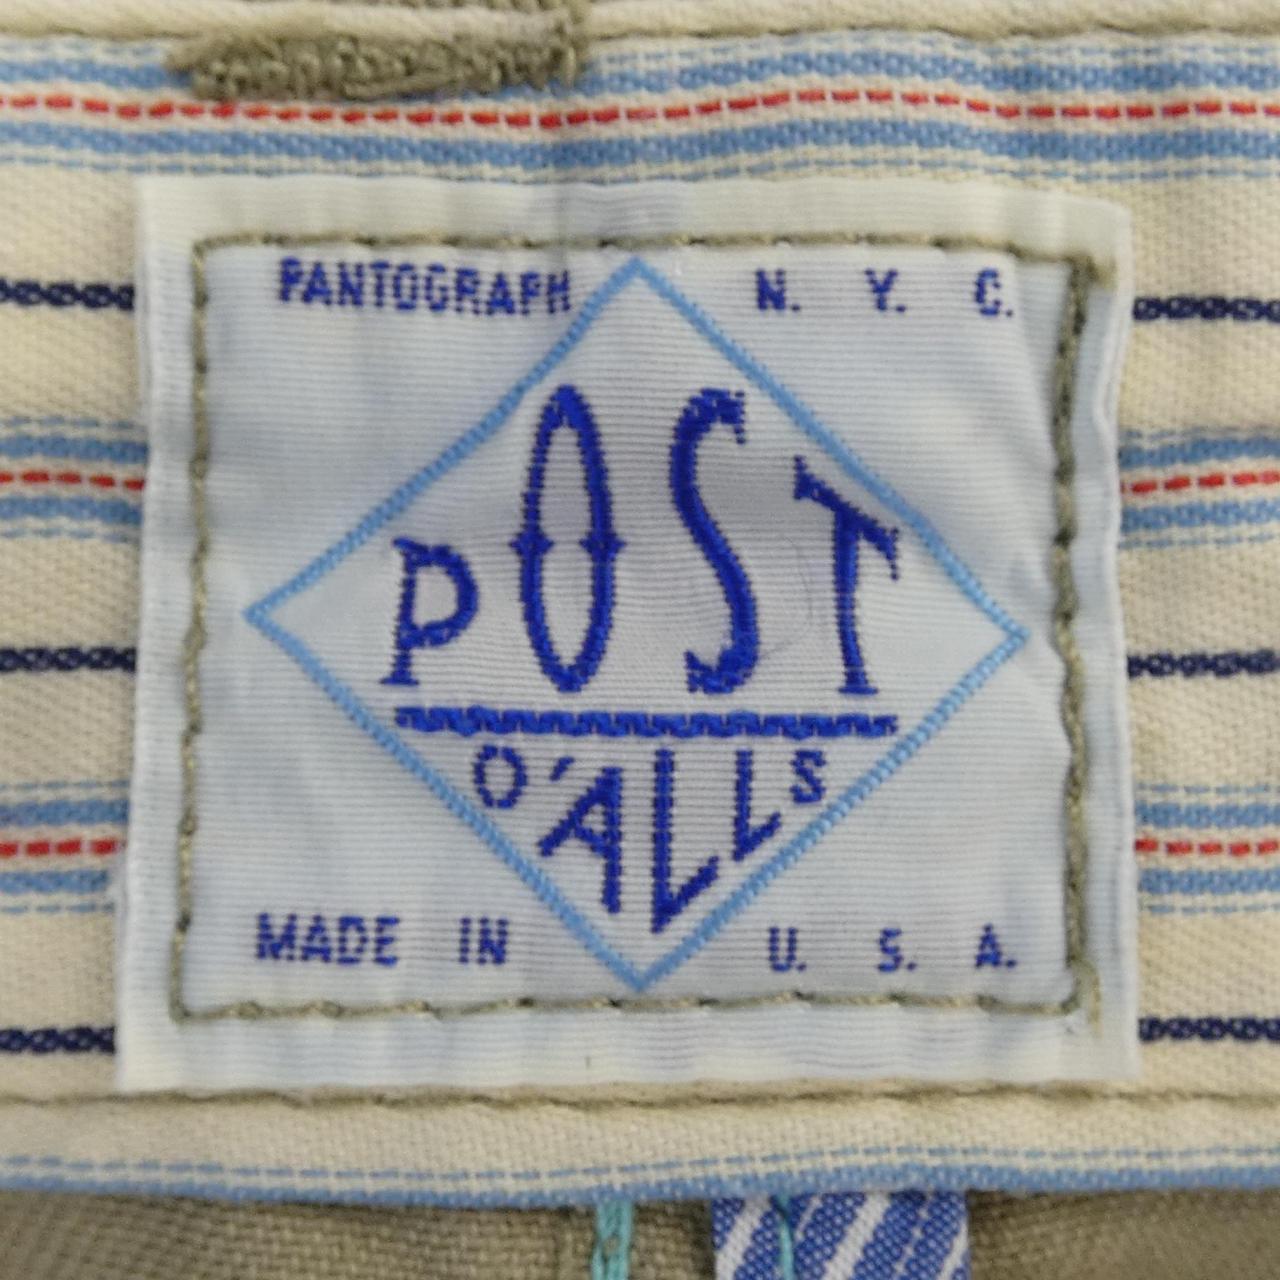 Post overalls POST O'ALLS pants